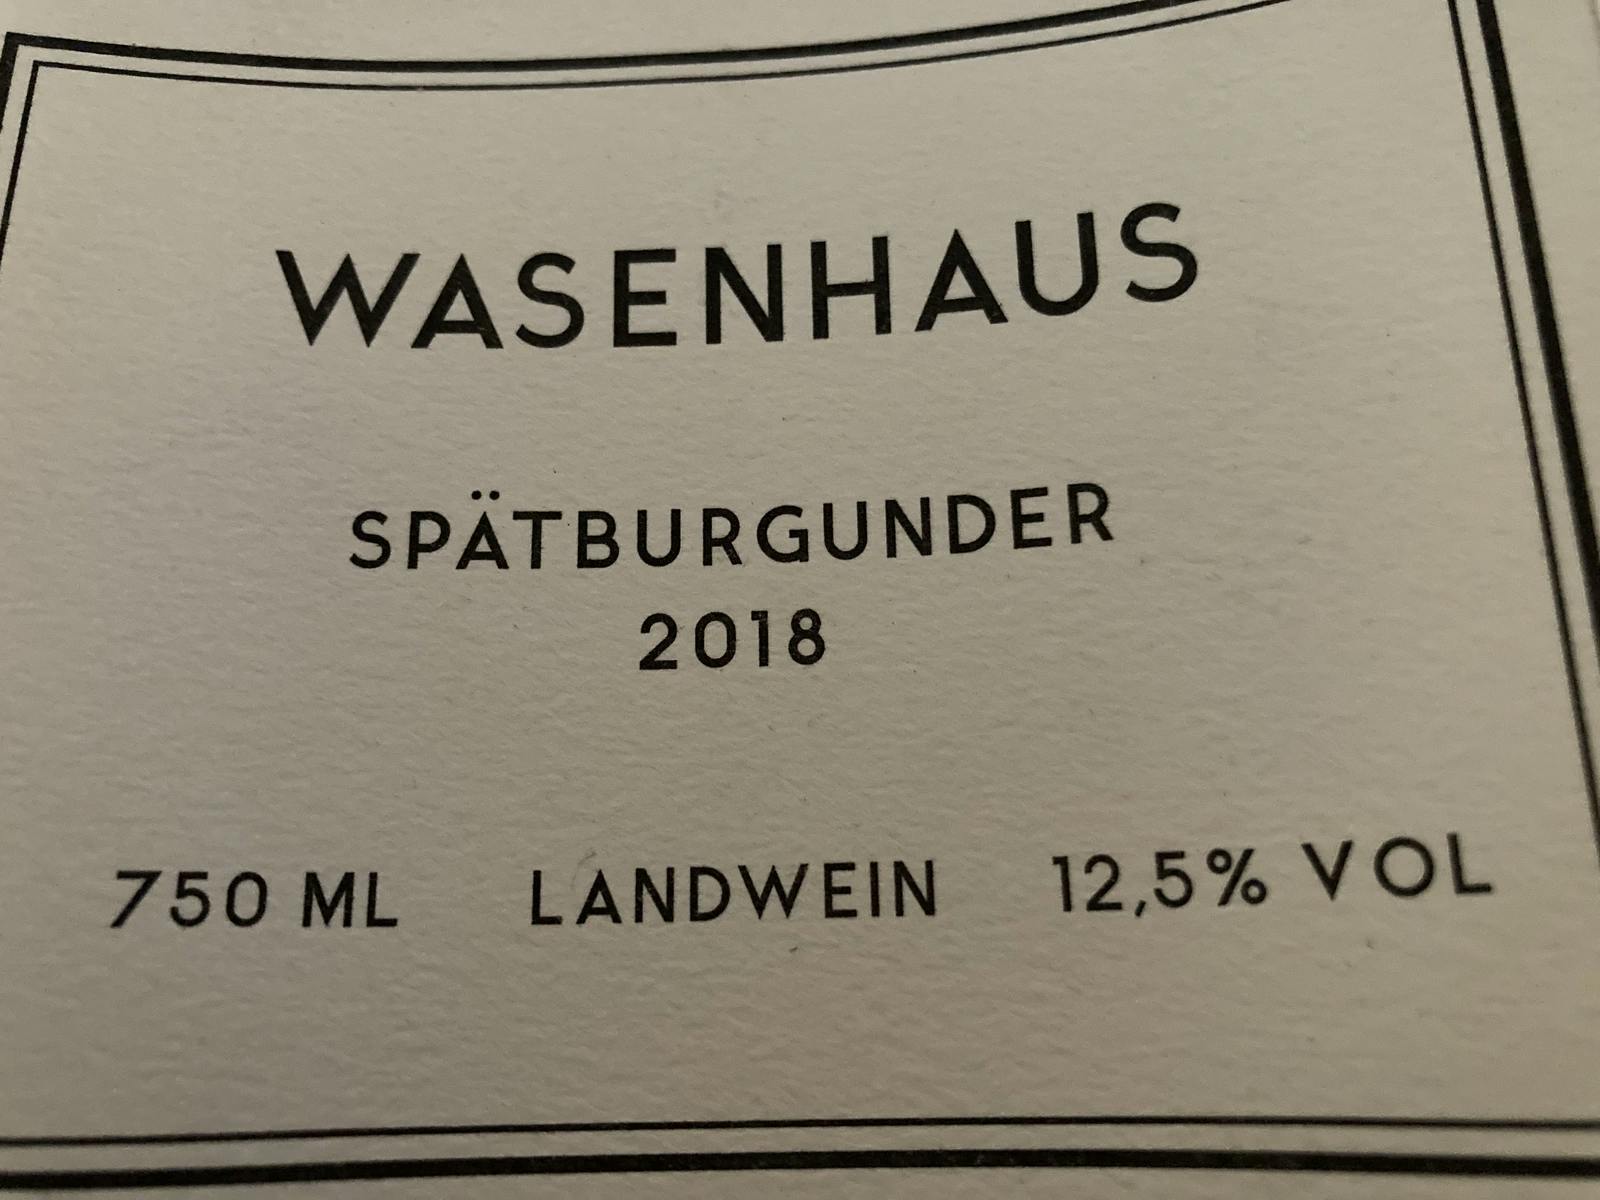 Wasenhaus Spätburgunder 2018